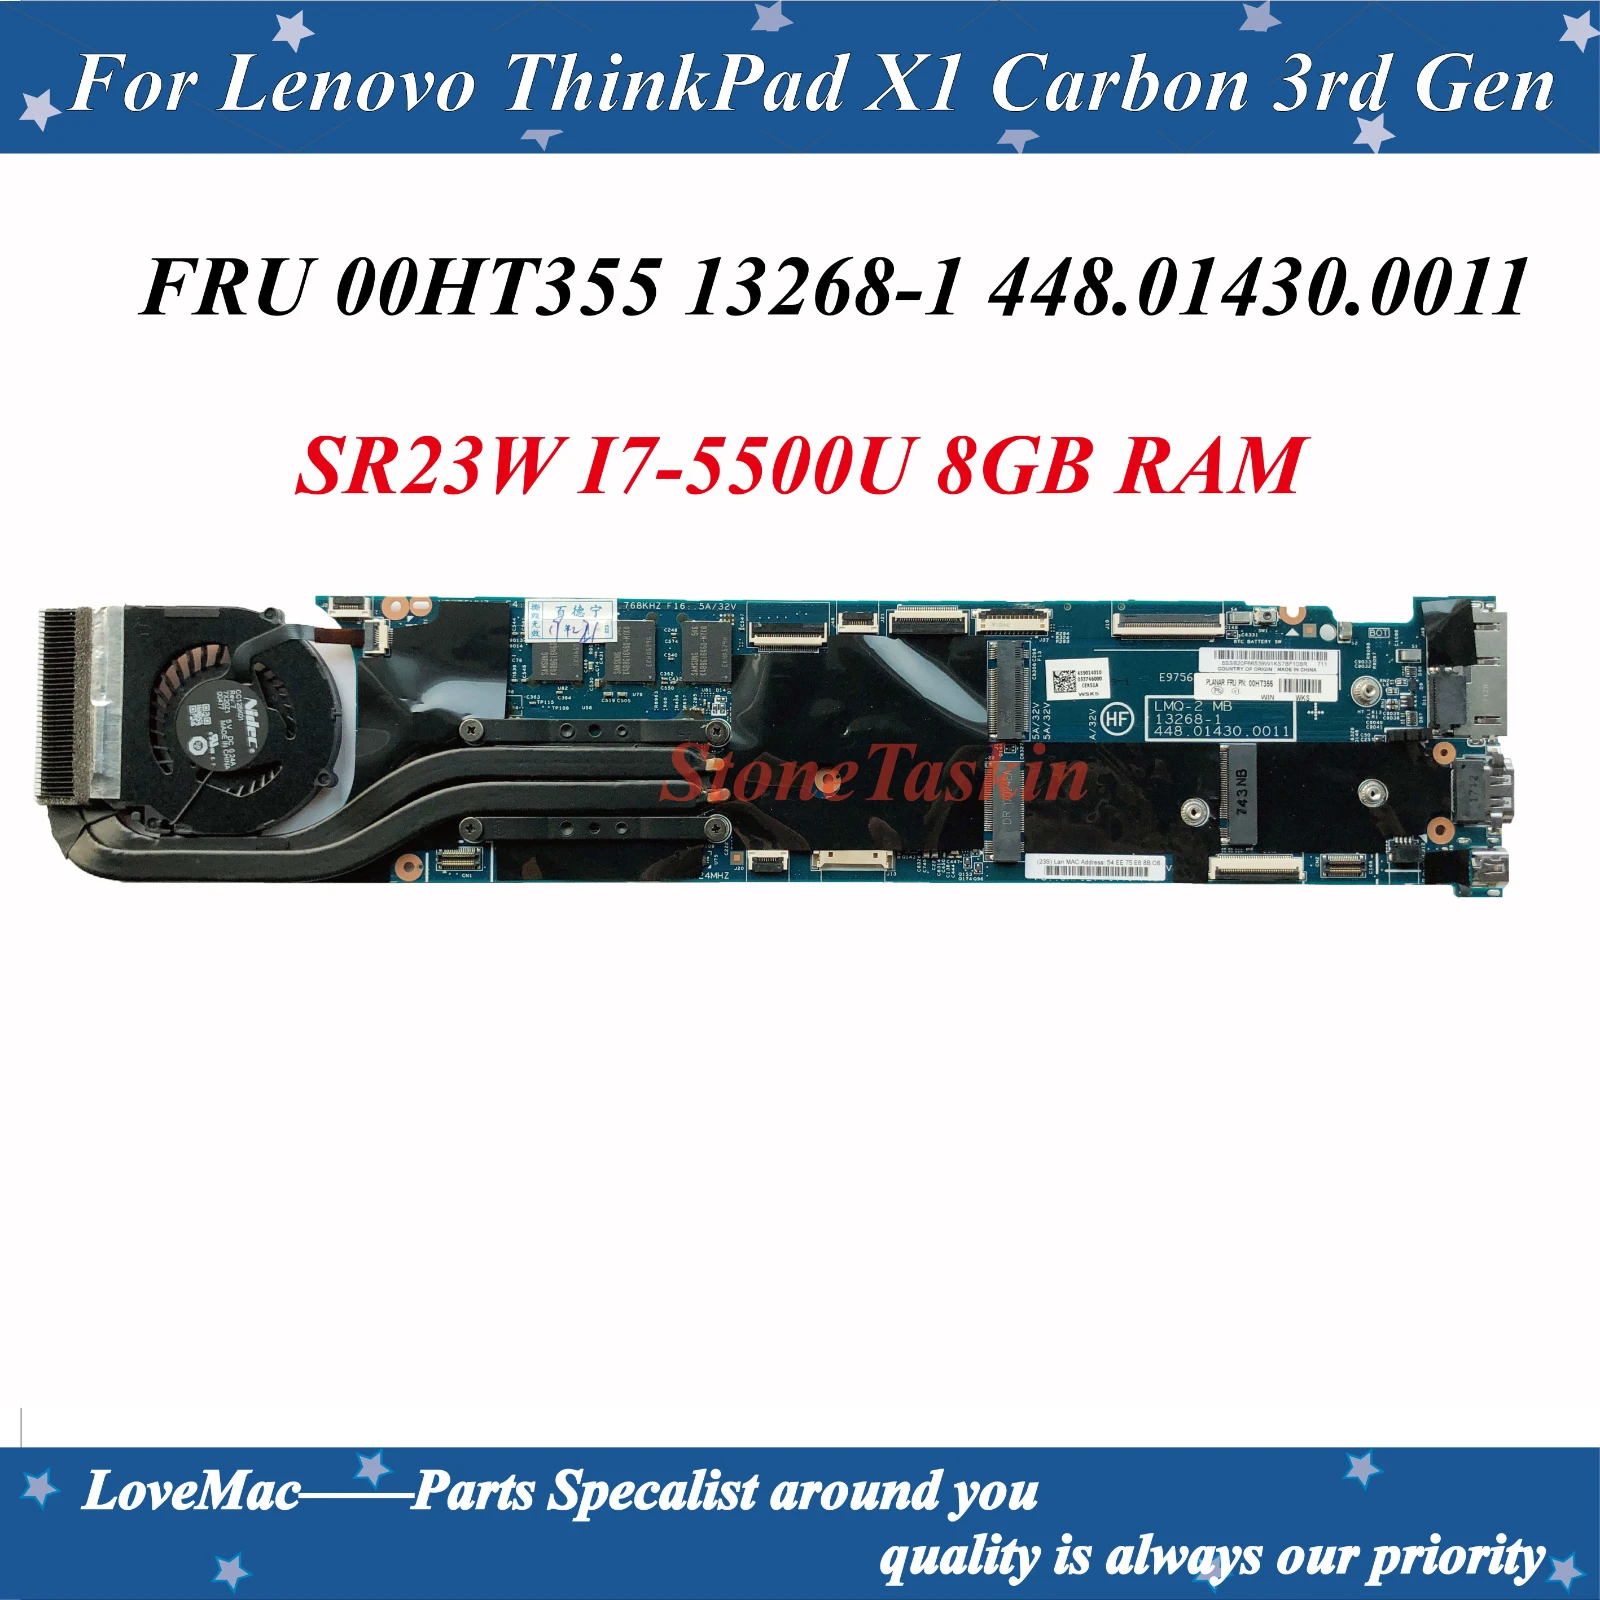 Atacado FRU 00HT355 Para Lenovo ThinkPad X1 Carbon 3ª Geração do Portátil placa-Mãe 13268-1 448.01430.0011 com I7-5500U CPU 8G de RAM